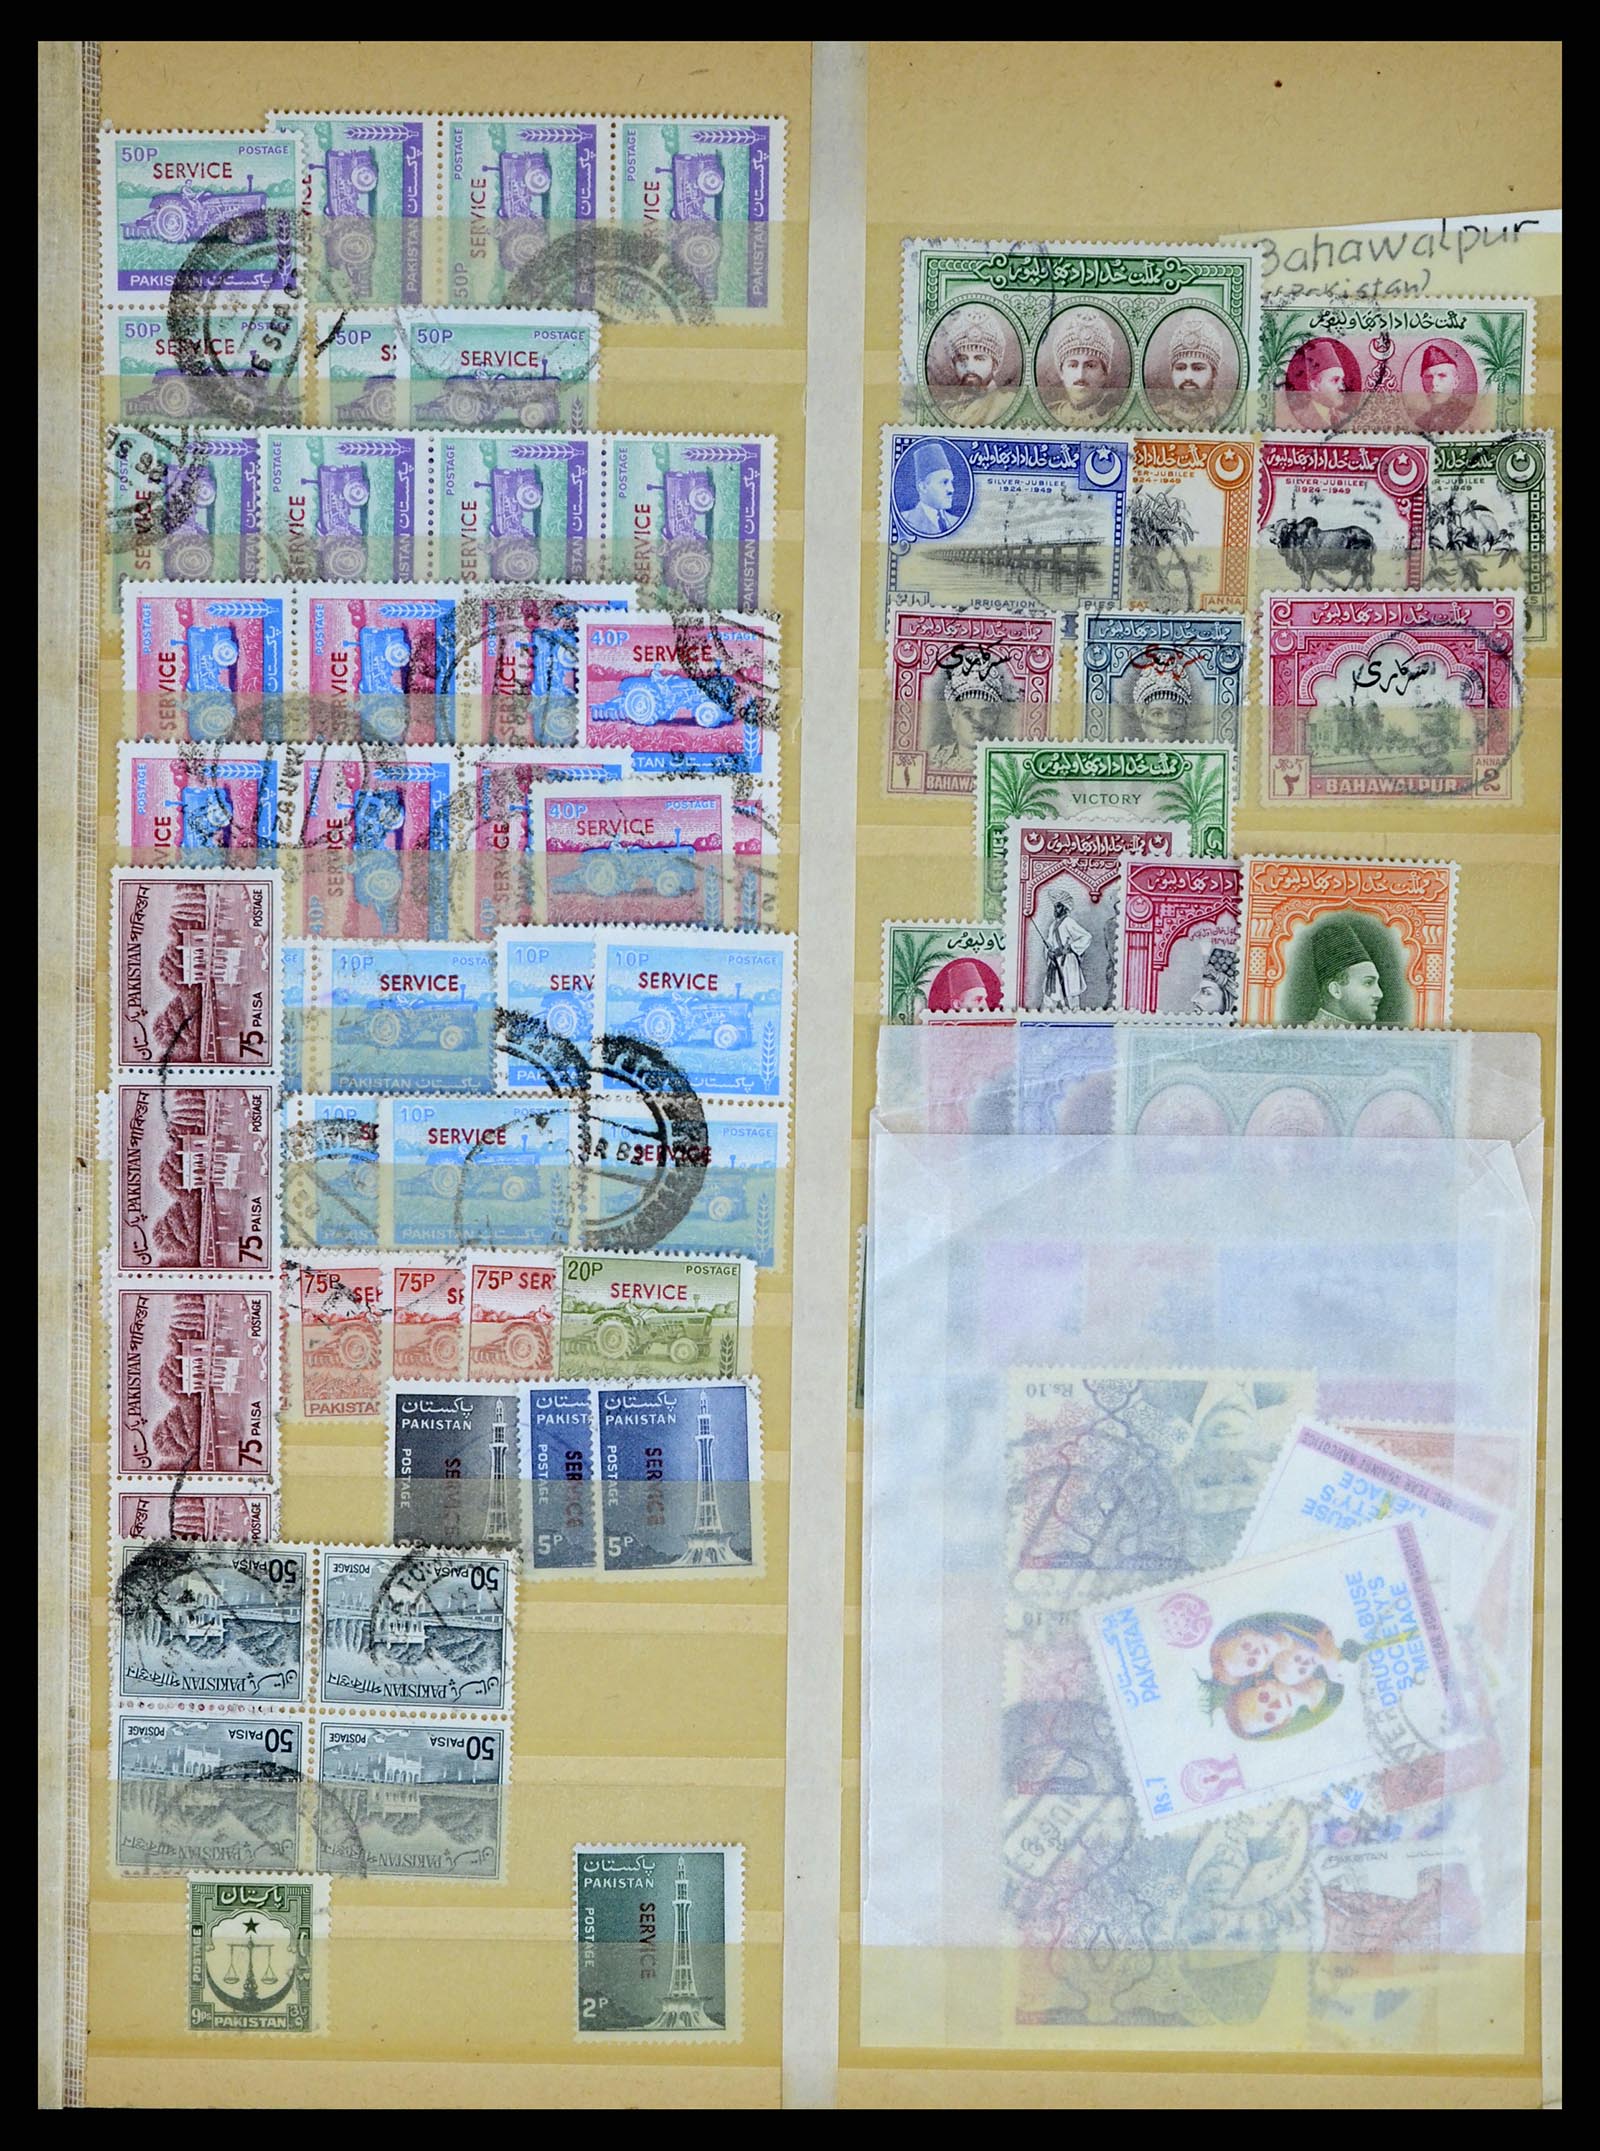 37619 330 - Stamp collection 37619 Pakistan/Bangladesh 1947-2000.